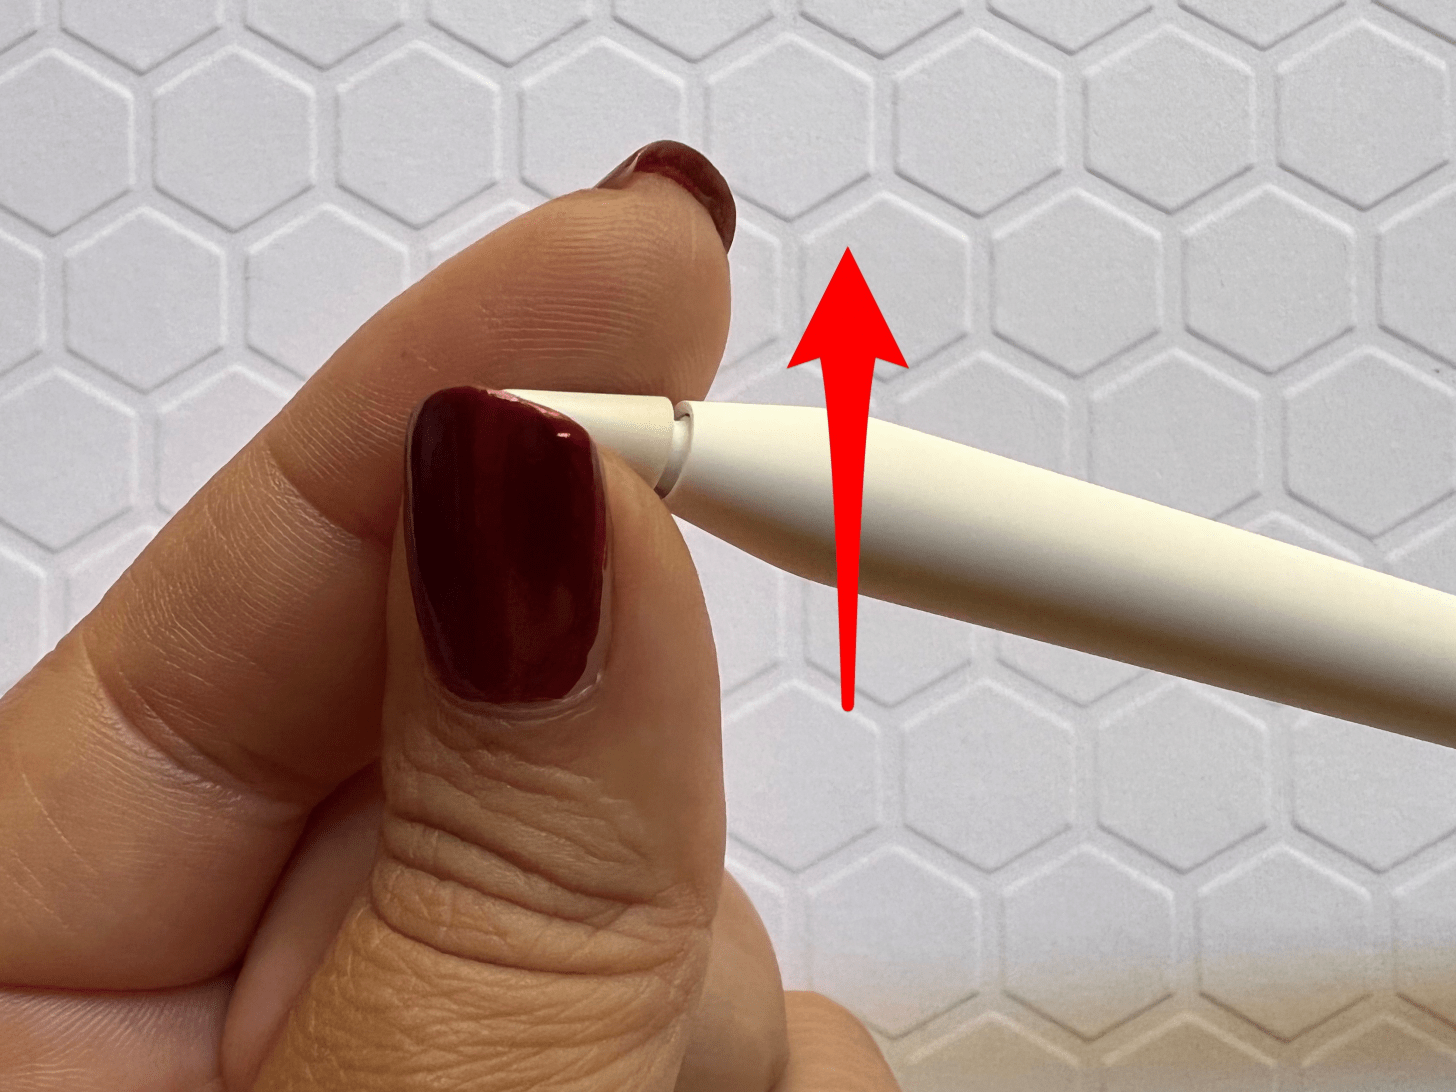 Tournez soigneusement la pointe de l'Apple Pencil dans le sens inverse des aiguilles d'une montre - le stylet iPad ne fonctionne pas